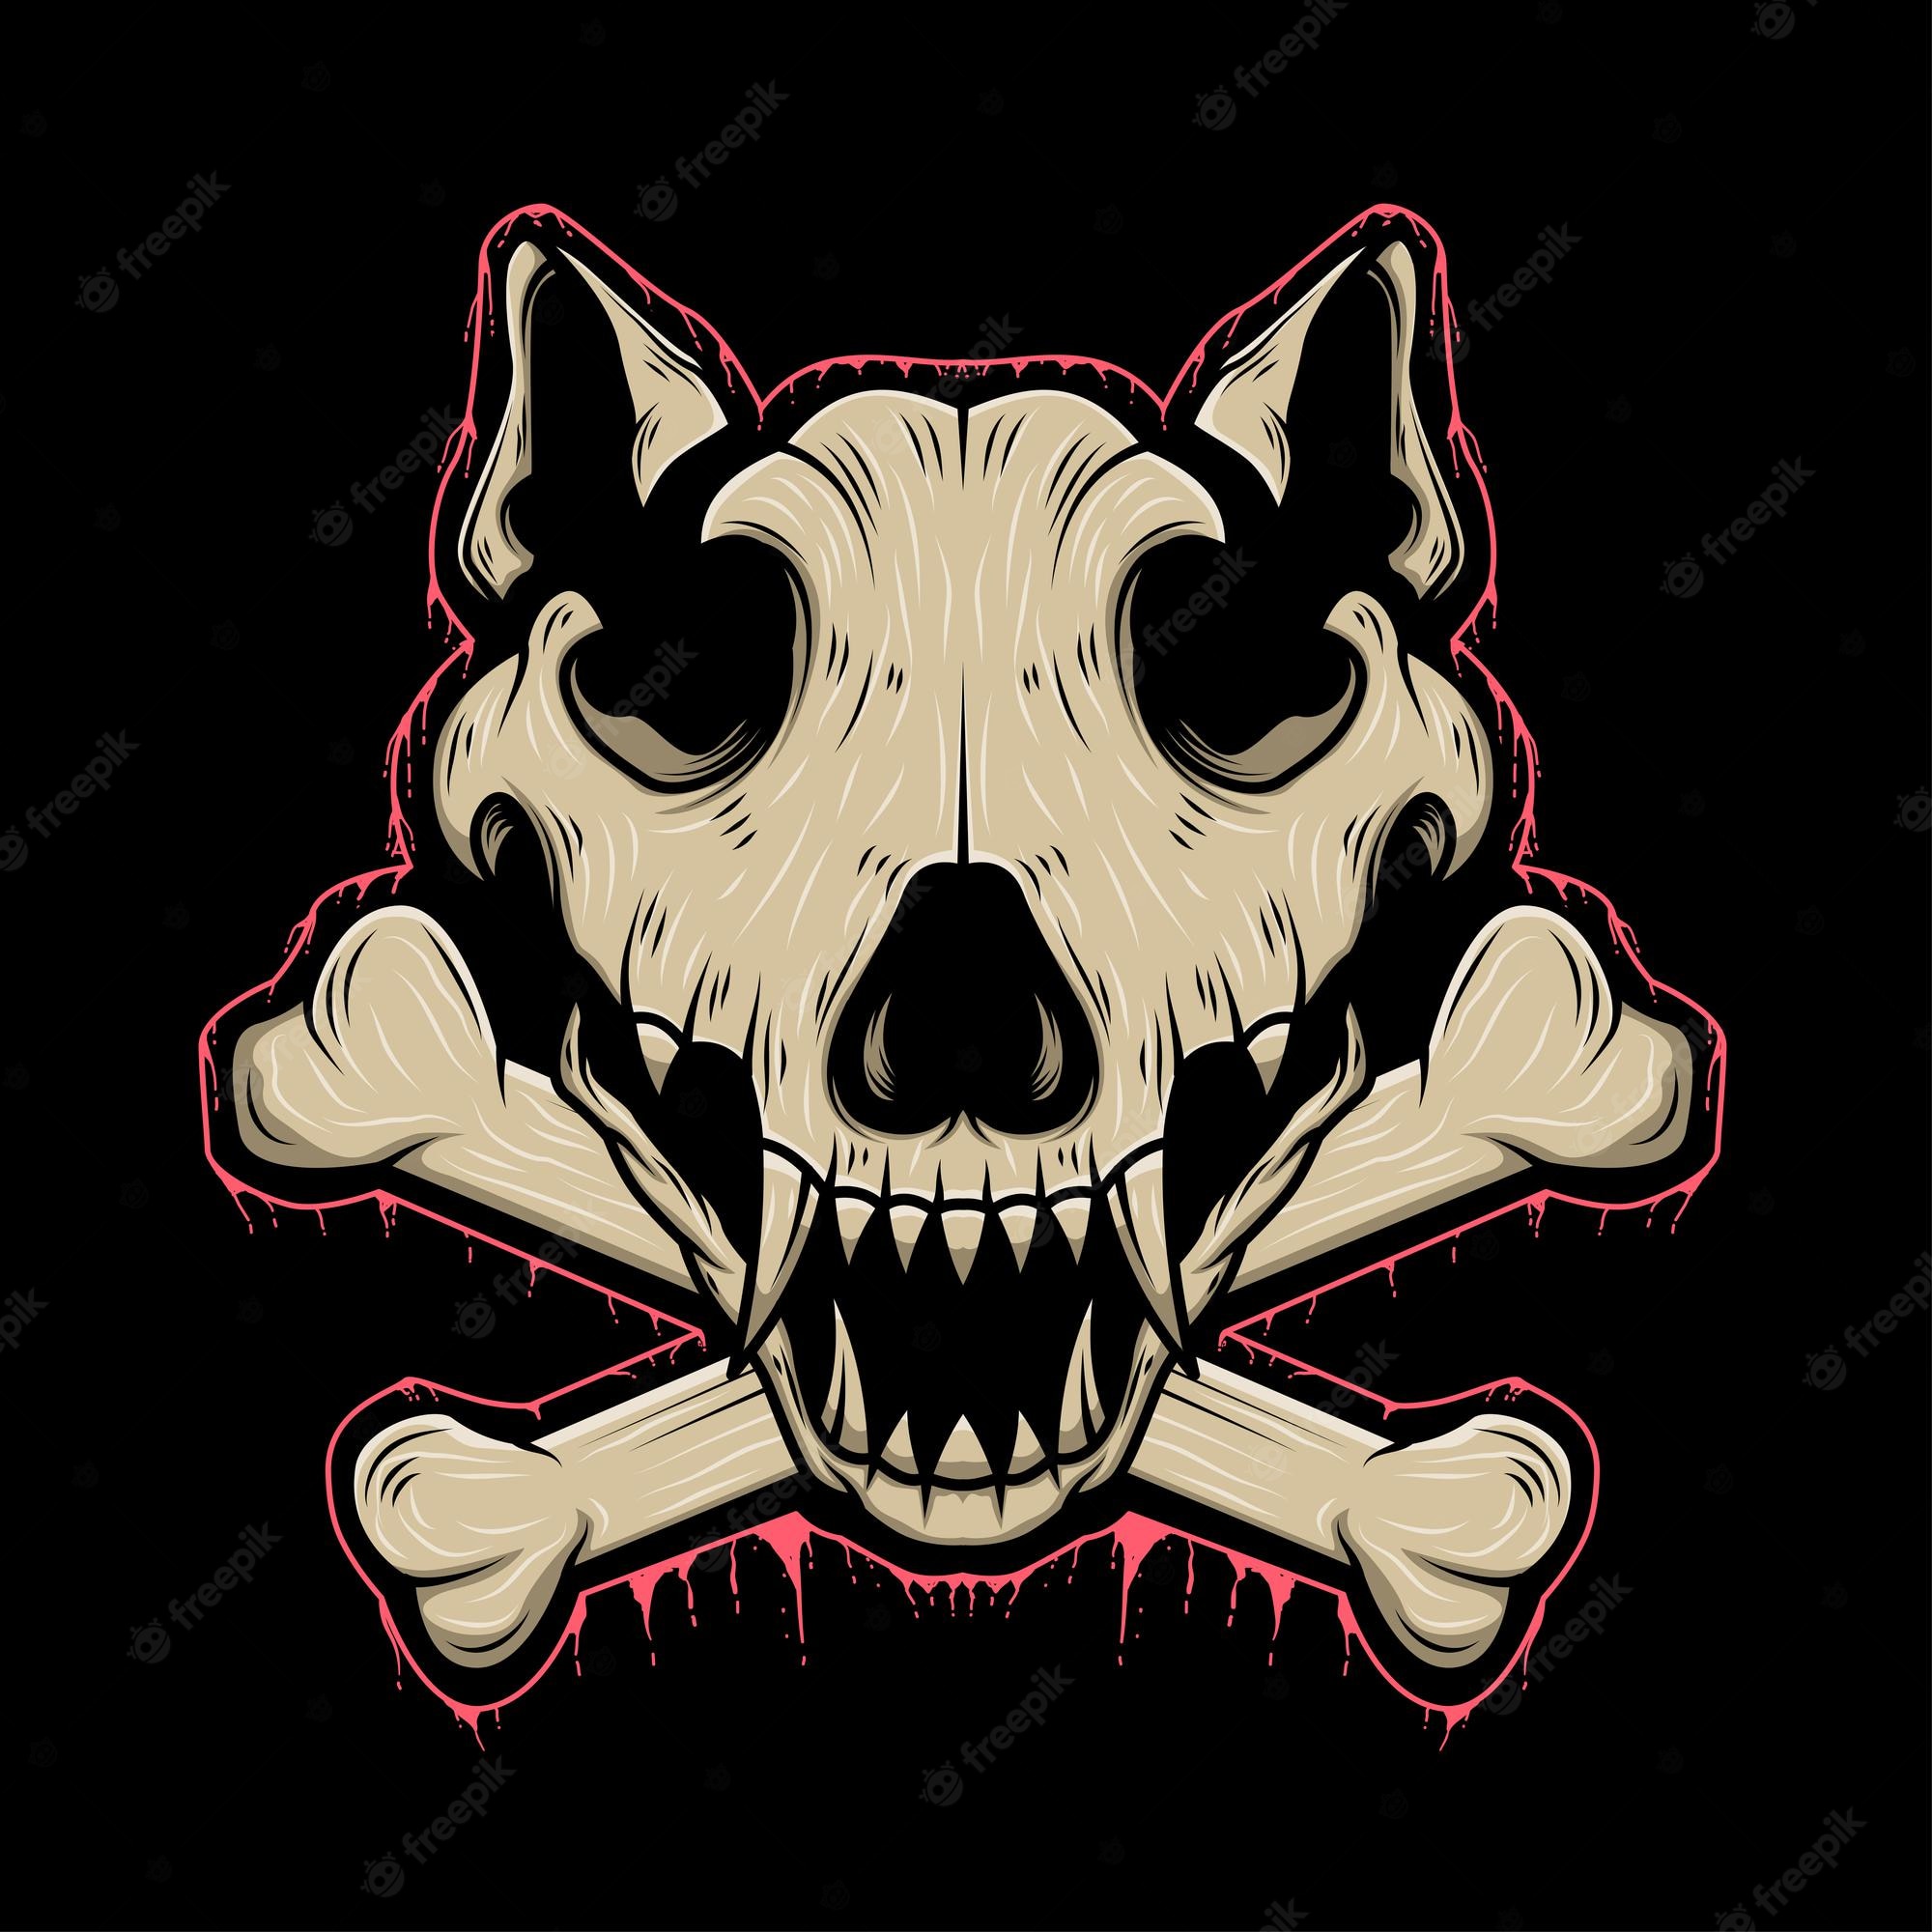 Dog Skull Drawing Image. Free Vectors, & PSD